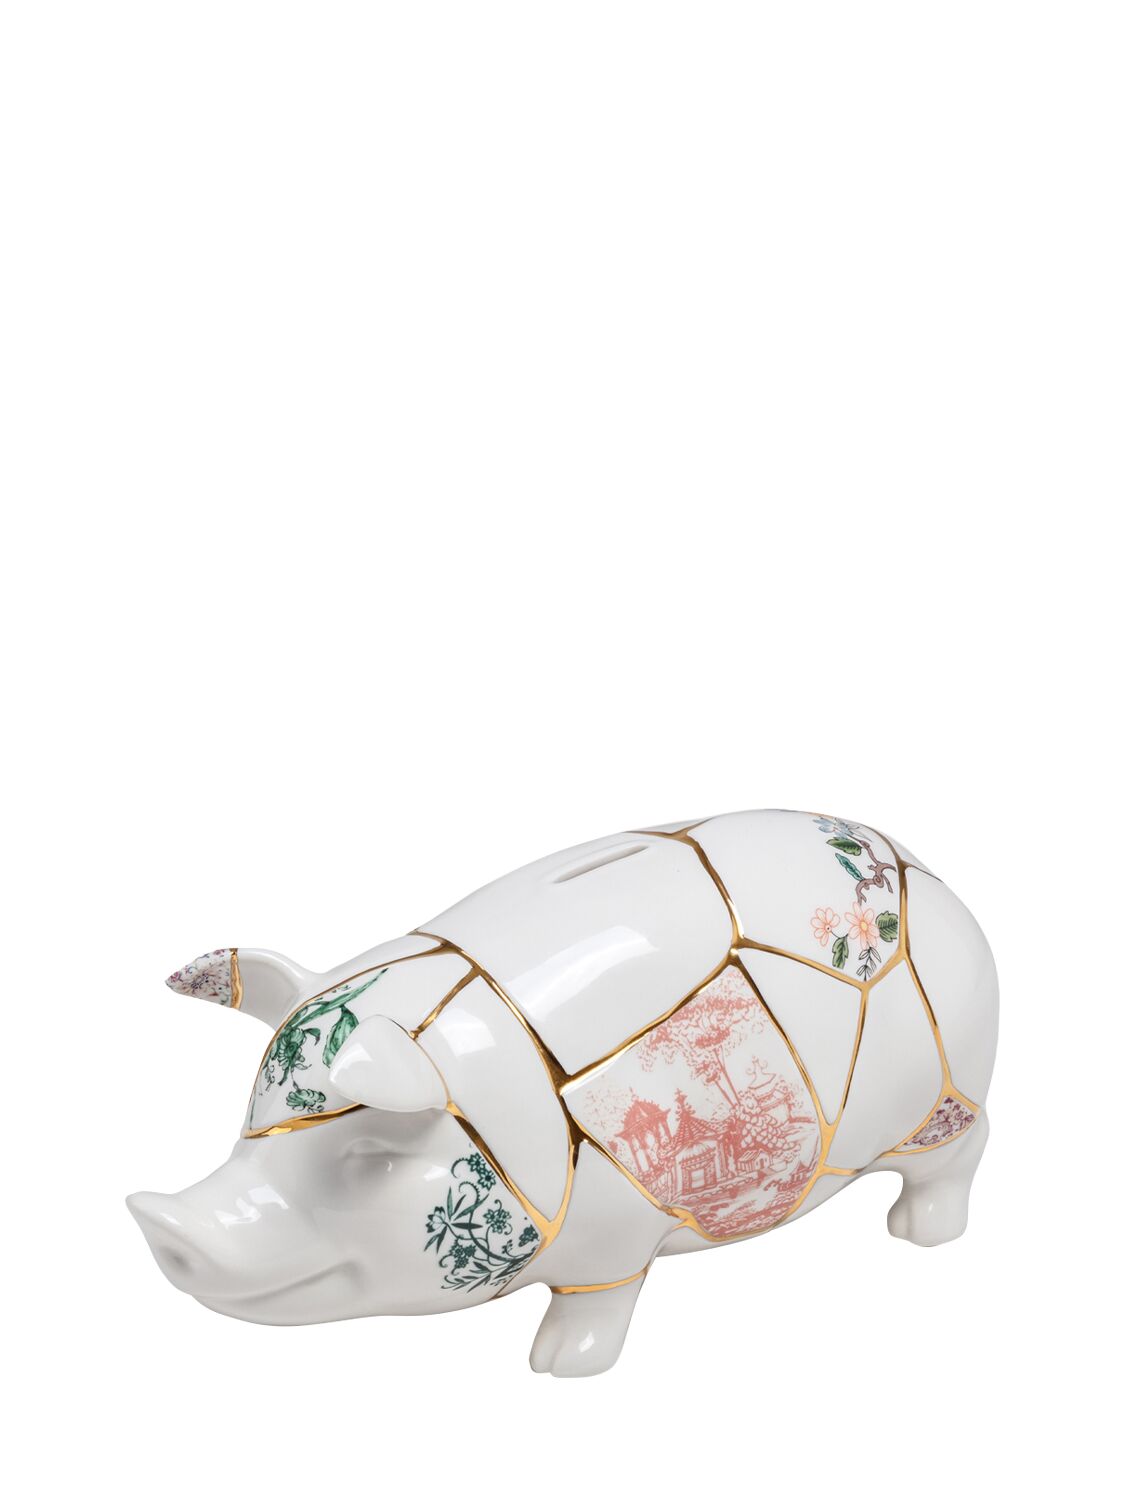 Image of Moneybox Kintsugi Piggy Bank